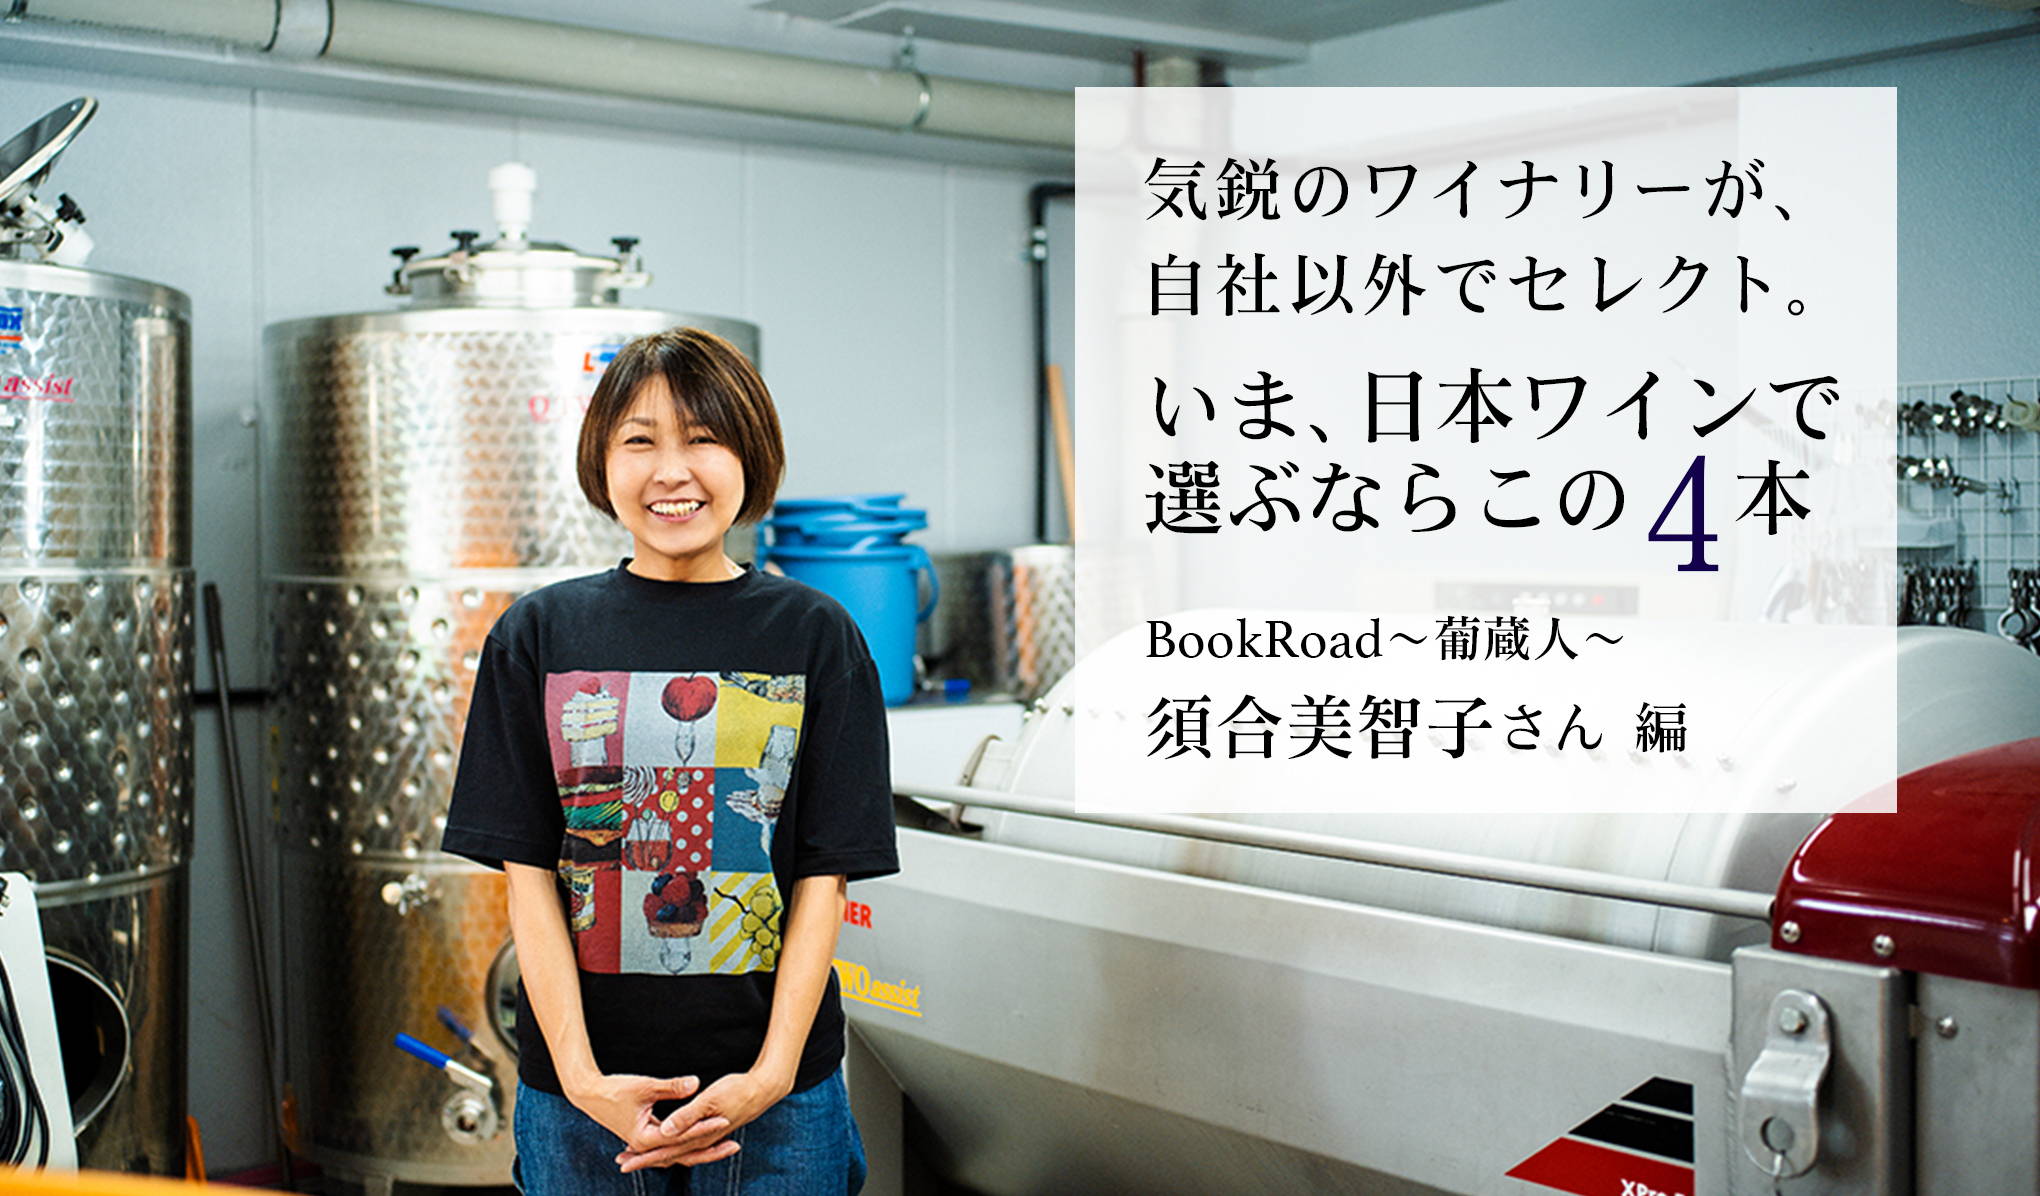 話題のワイナリー、BookRoad(ブックロード) 〜葡蔵人〜の須合美智子(すごうみちこ)さんが自社以外でセレクト。いま、日本ワインで選ぶならこの4本